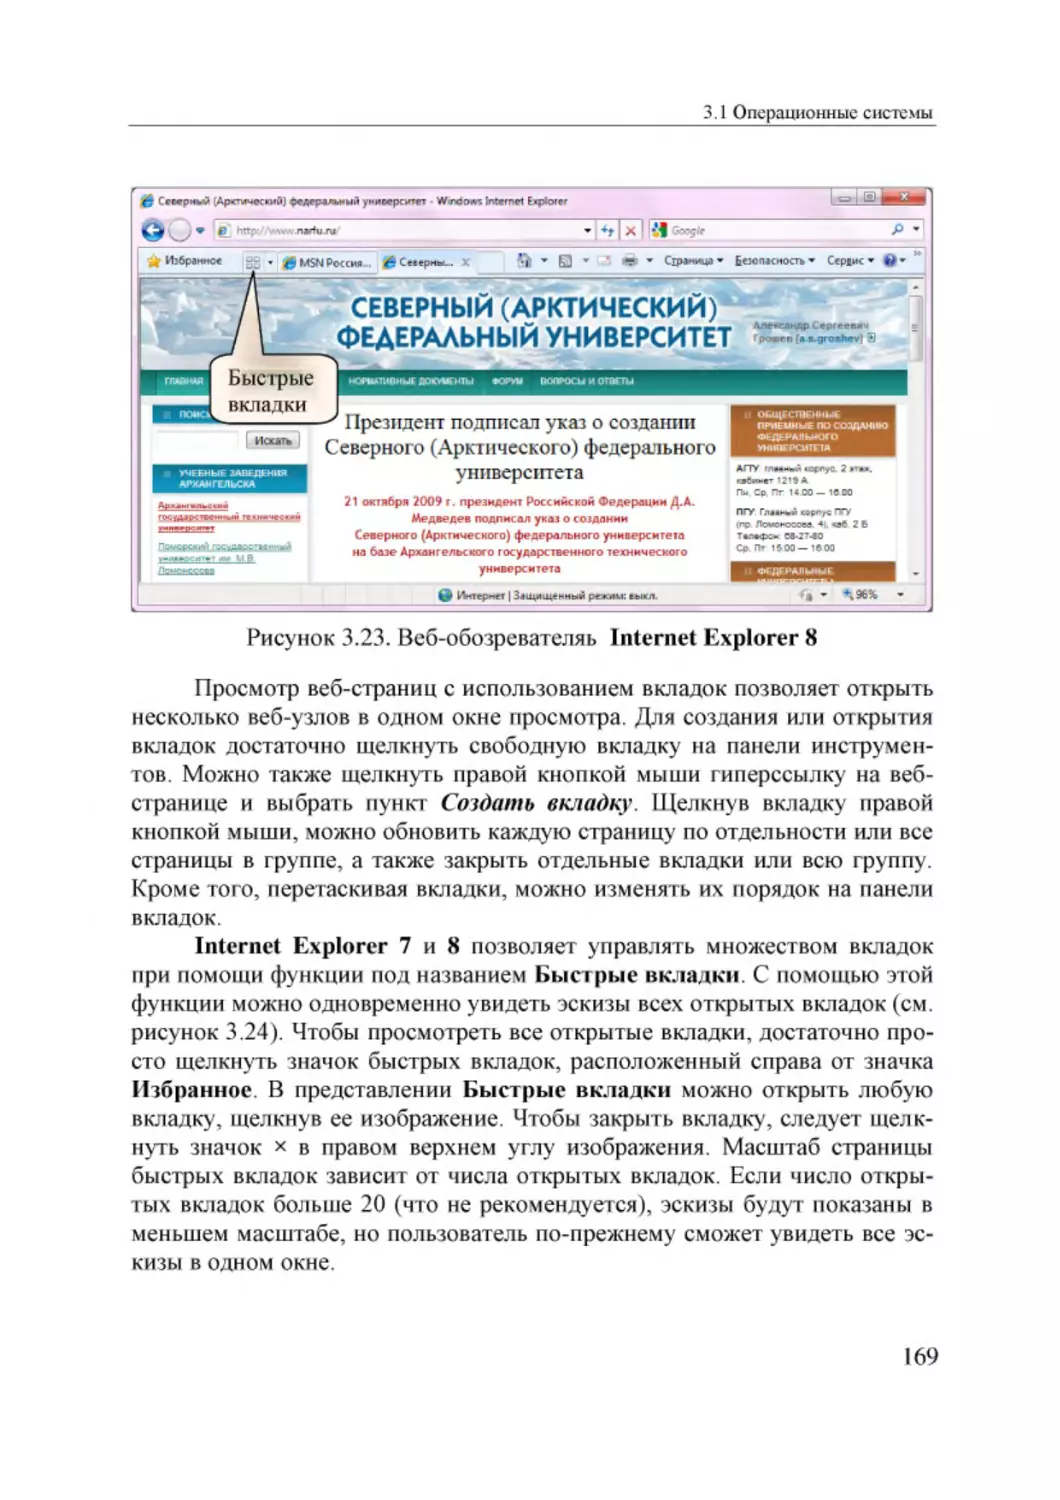 Informatika_Uchebnik_dlya_vuzov_2010 169